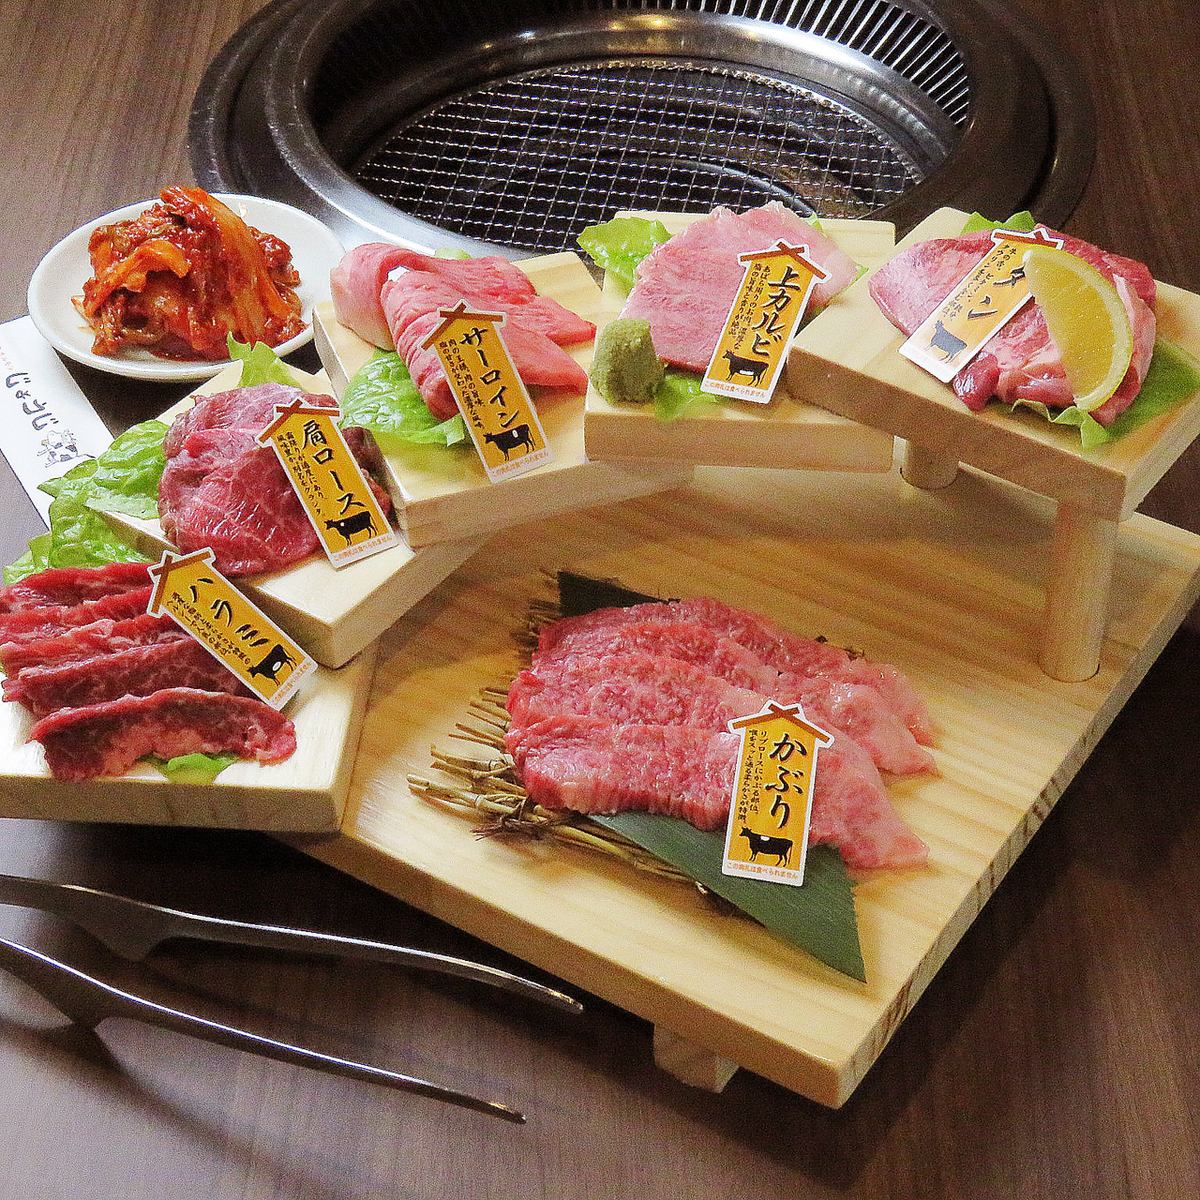 请享用精选的日本牛肉和激素。